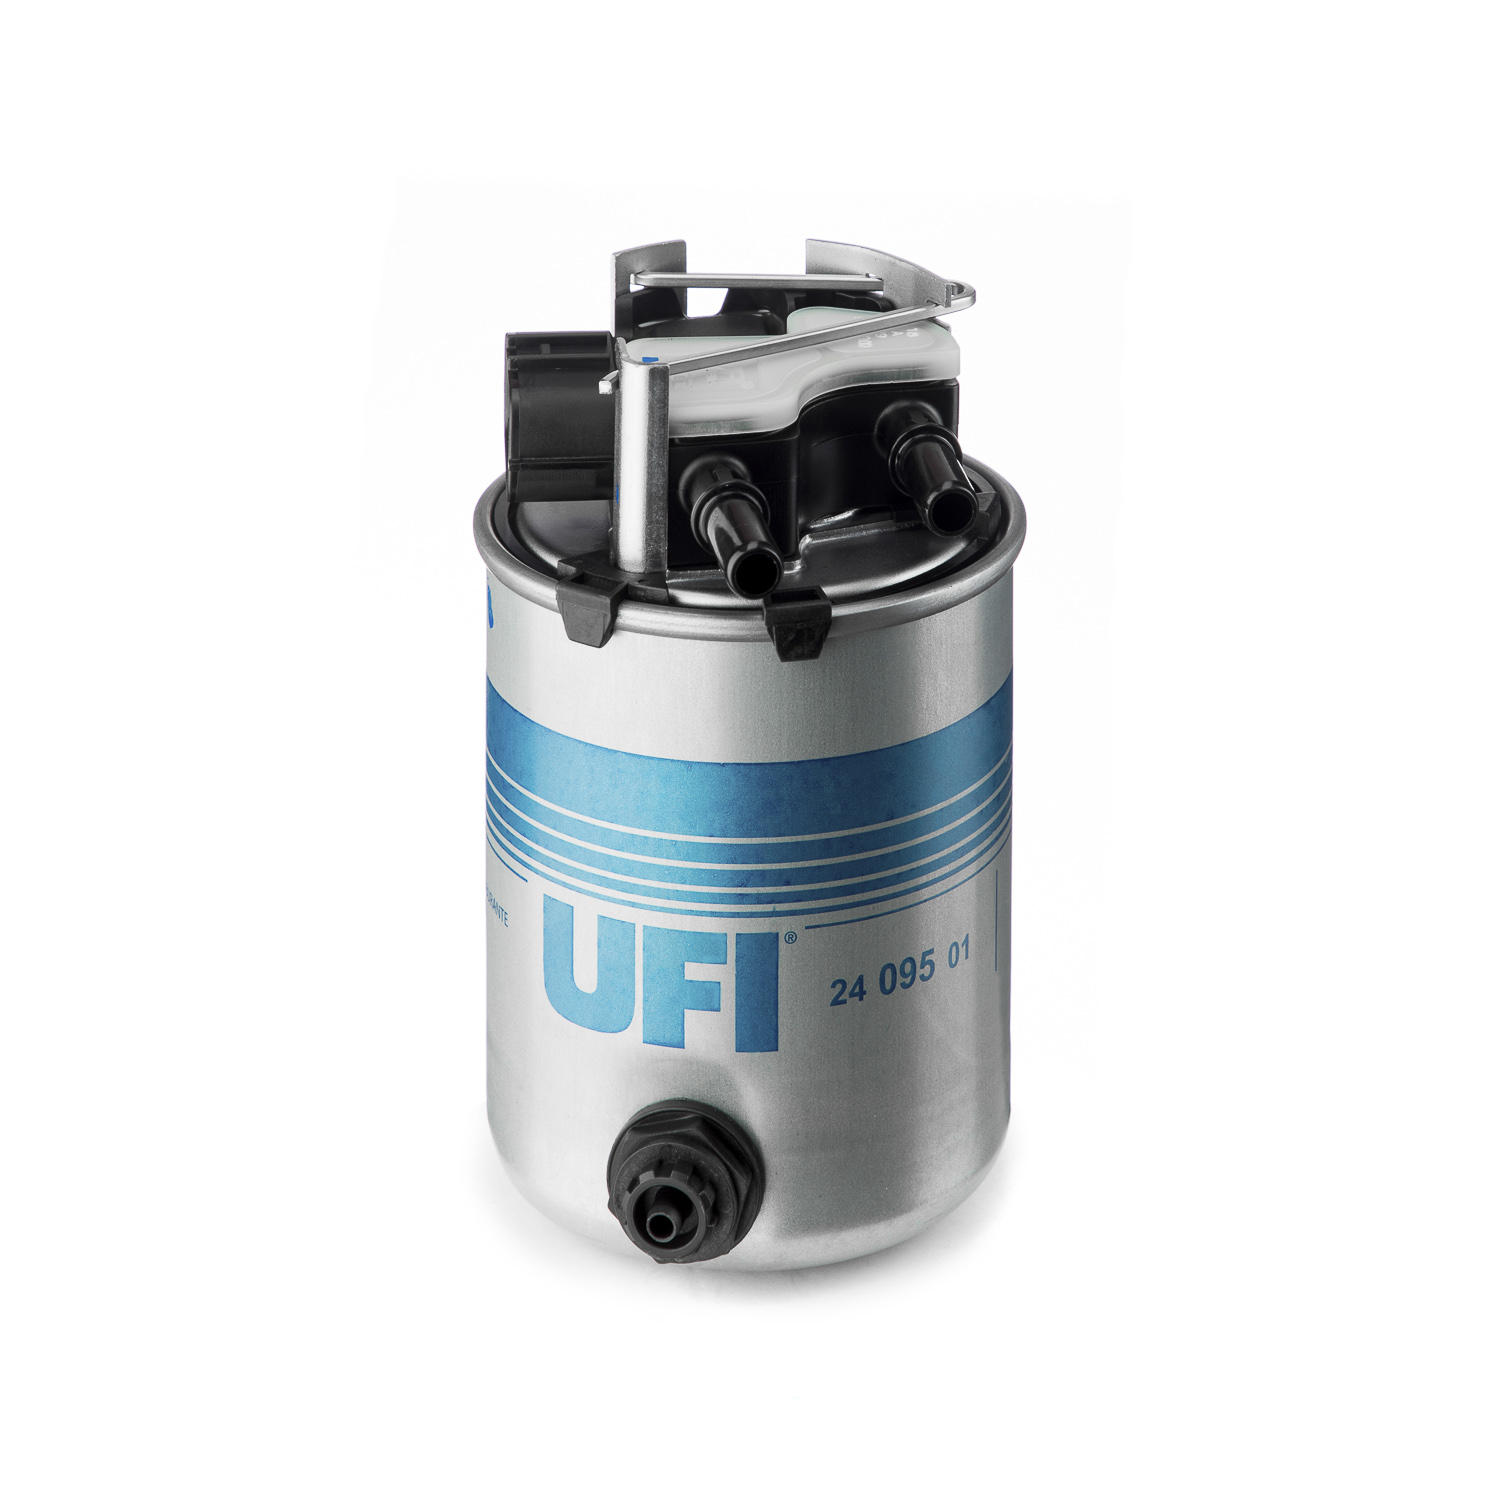 UFI  yakit filtresi renault kadjar 15 dci16 dci 2015 oem montaj urun 2409501 4